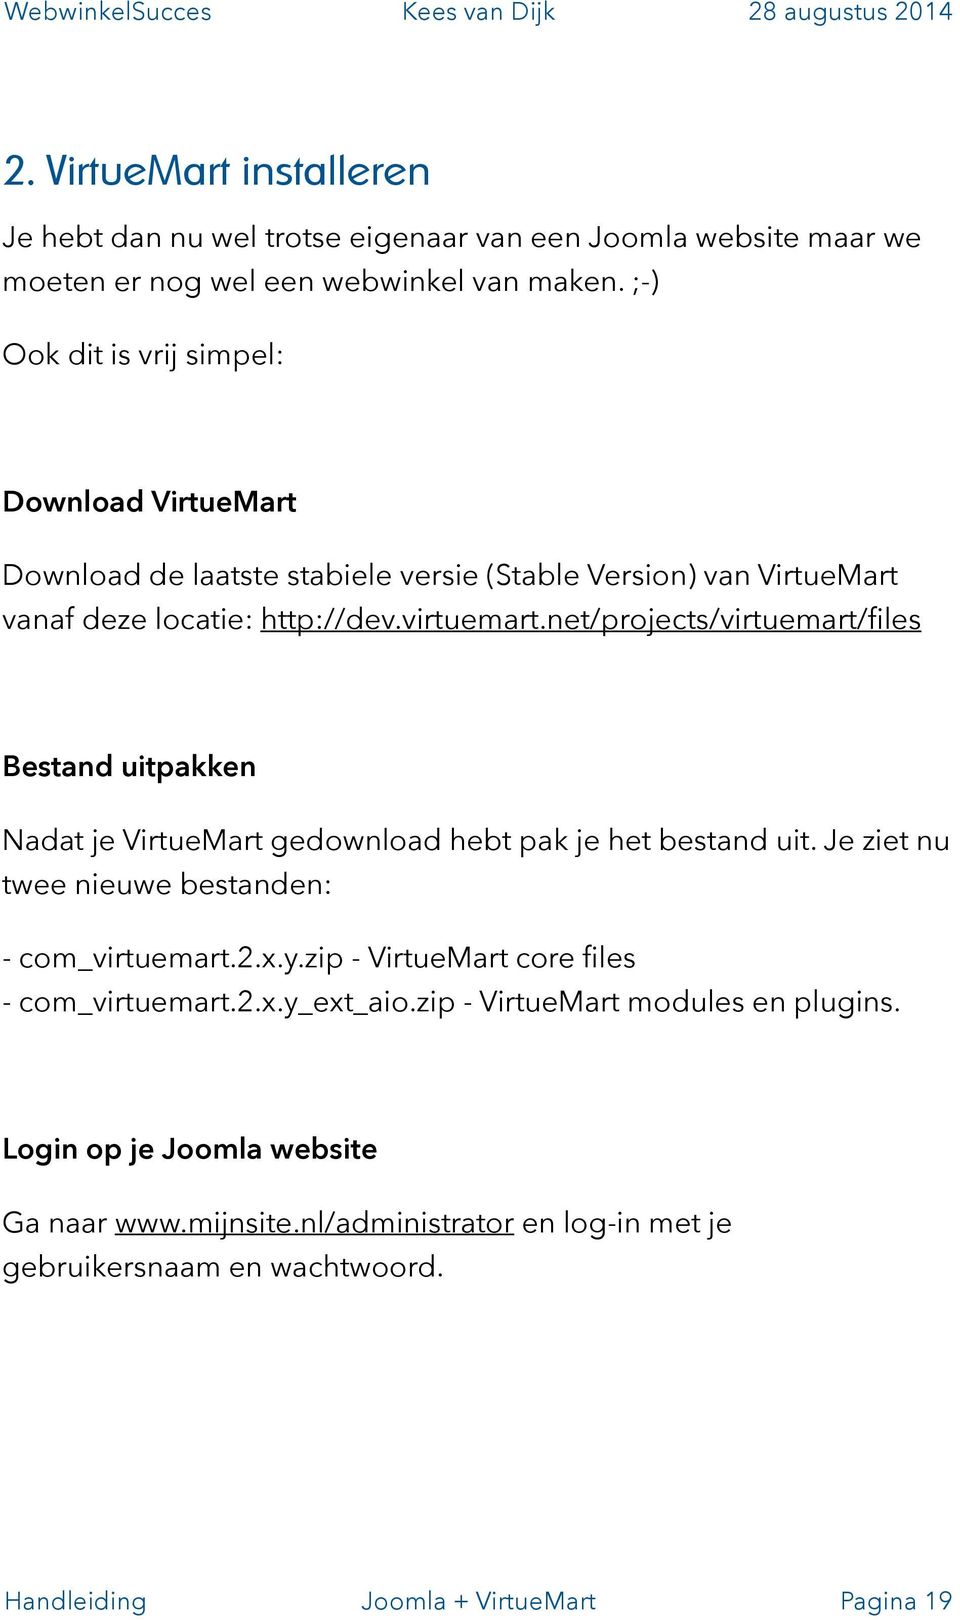 net/projects/virtuemart/files Bestand uitpakken Nadat je VirtueMart gedownload hebt pak je het bestand uit. Je ziet nu twee nieuwe bestanden: - com_virtuemart.2.x.y.